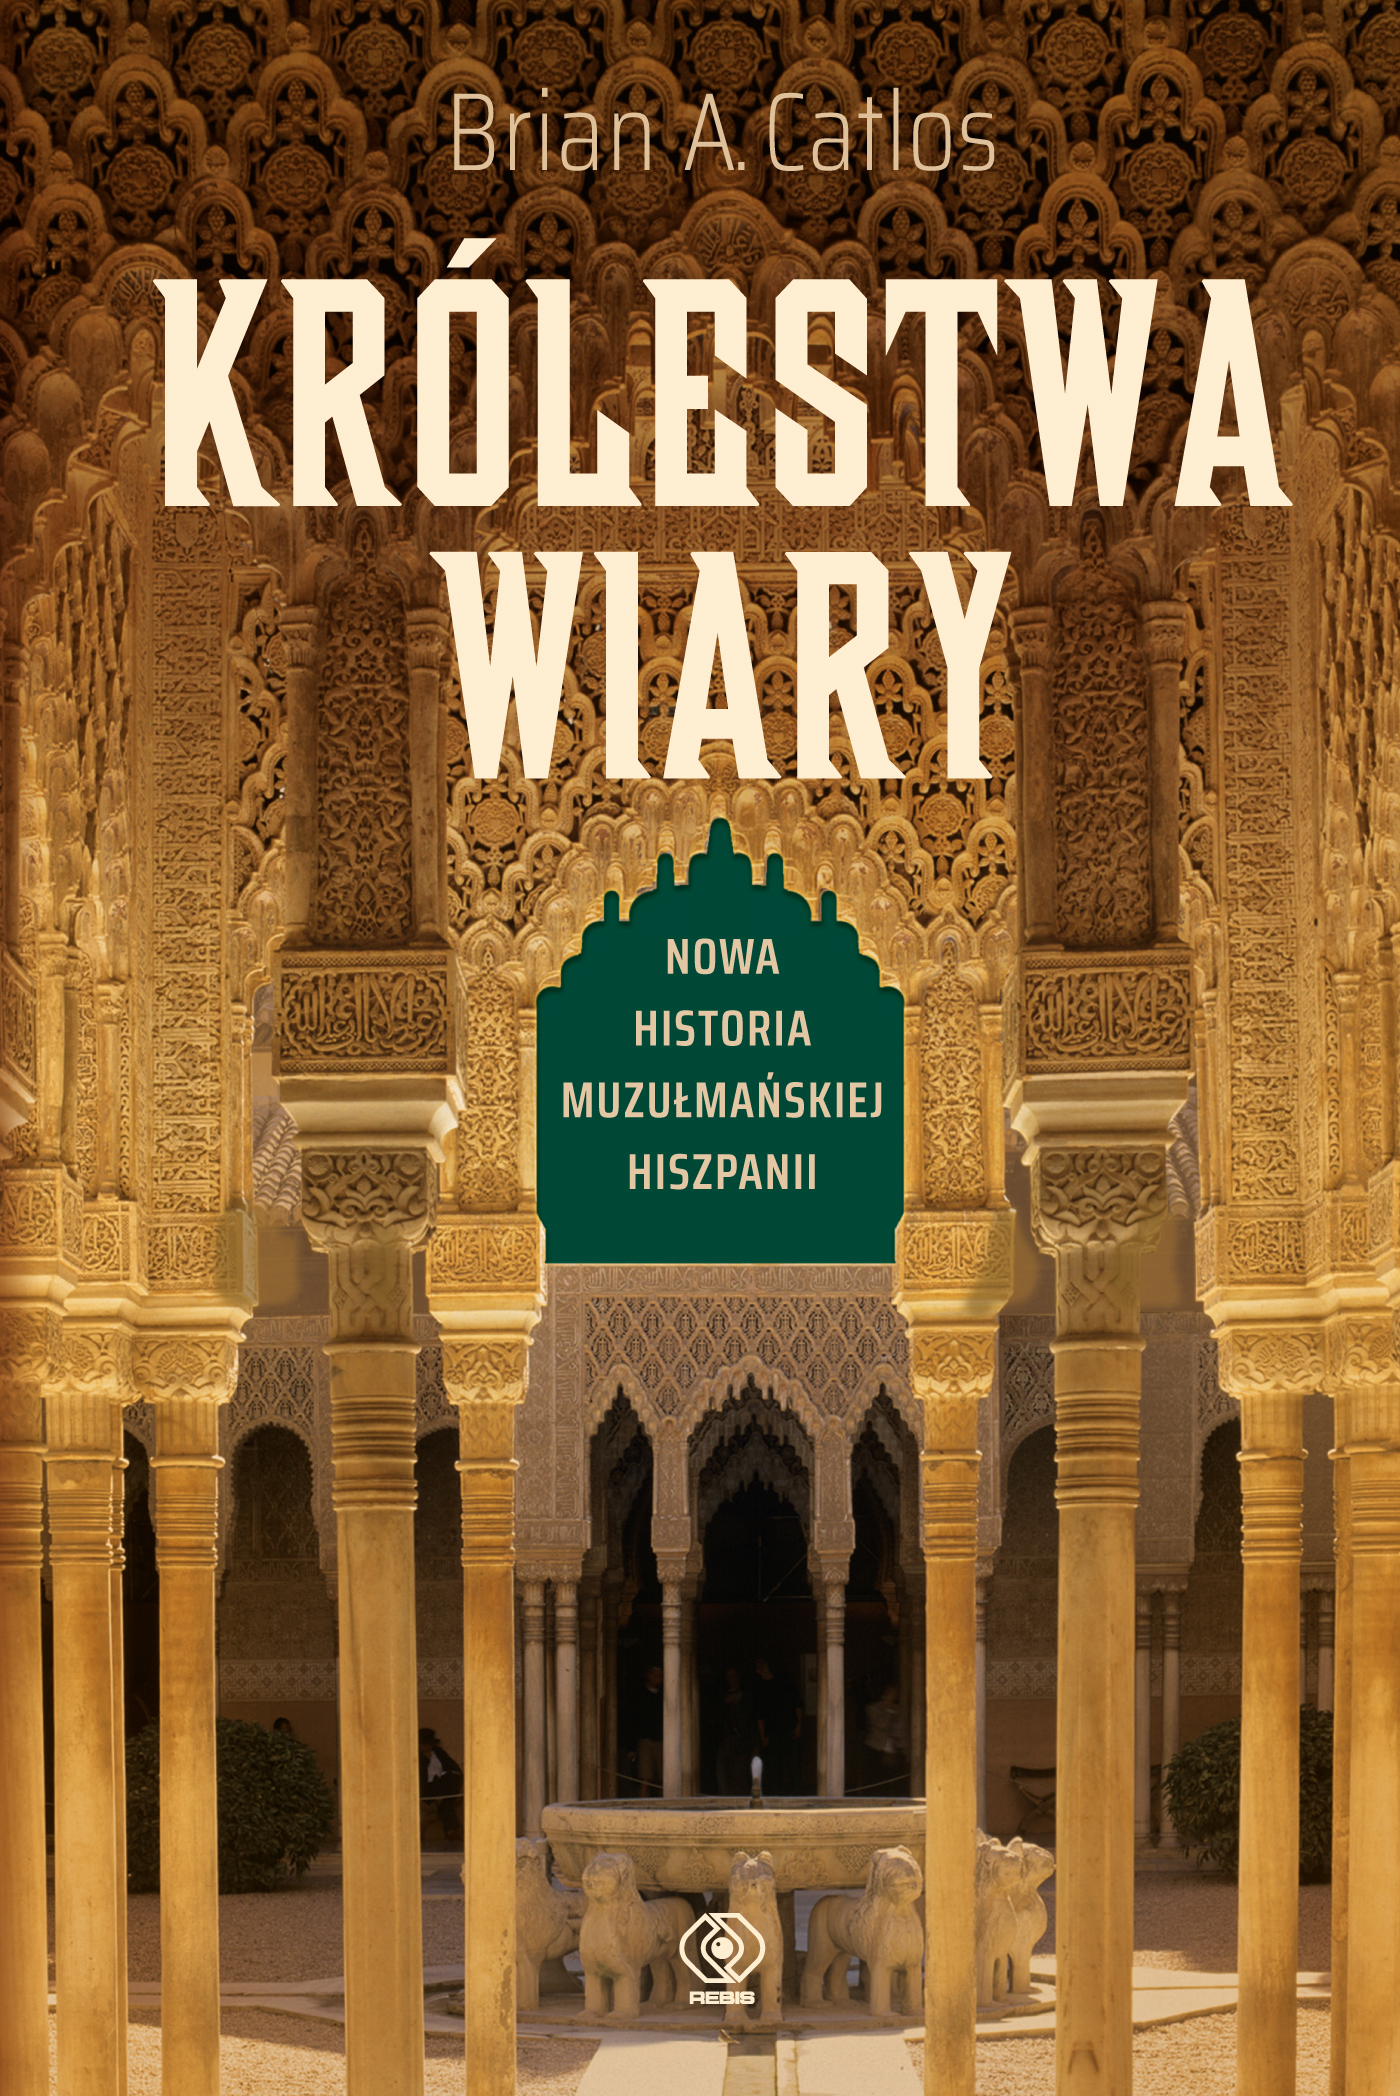 "Królestwo wiary"  - historia podboju Półwyspu Iberyjskiego przez Arabów